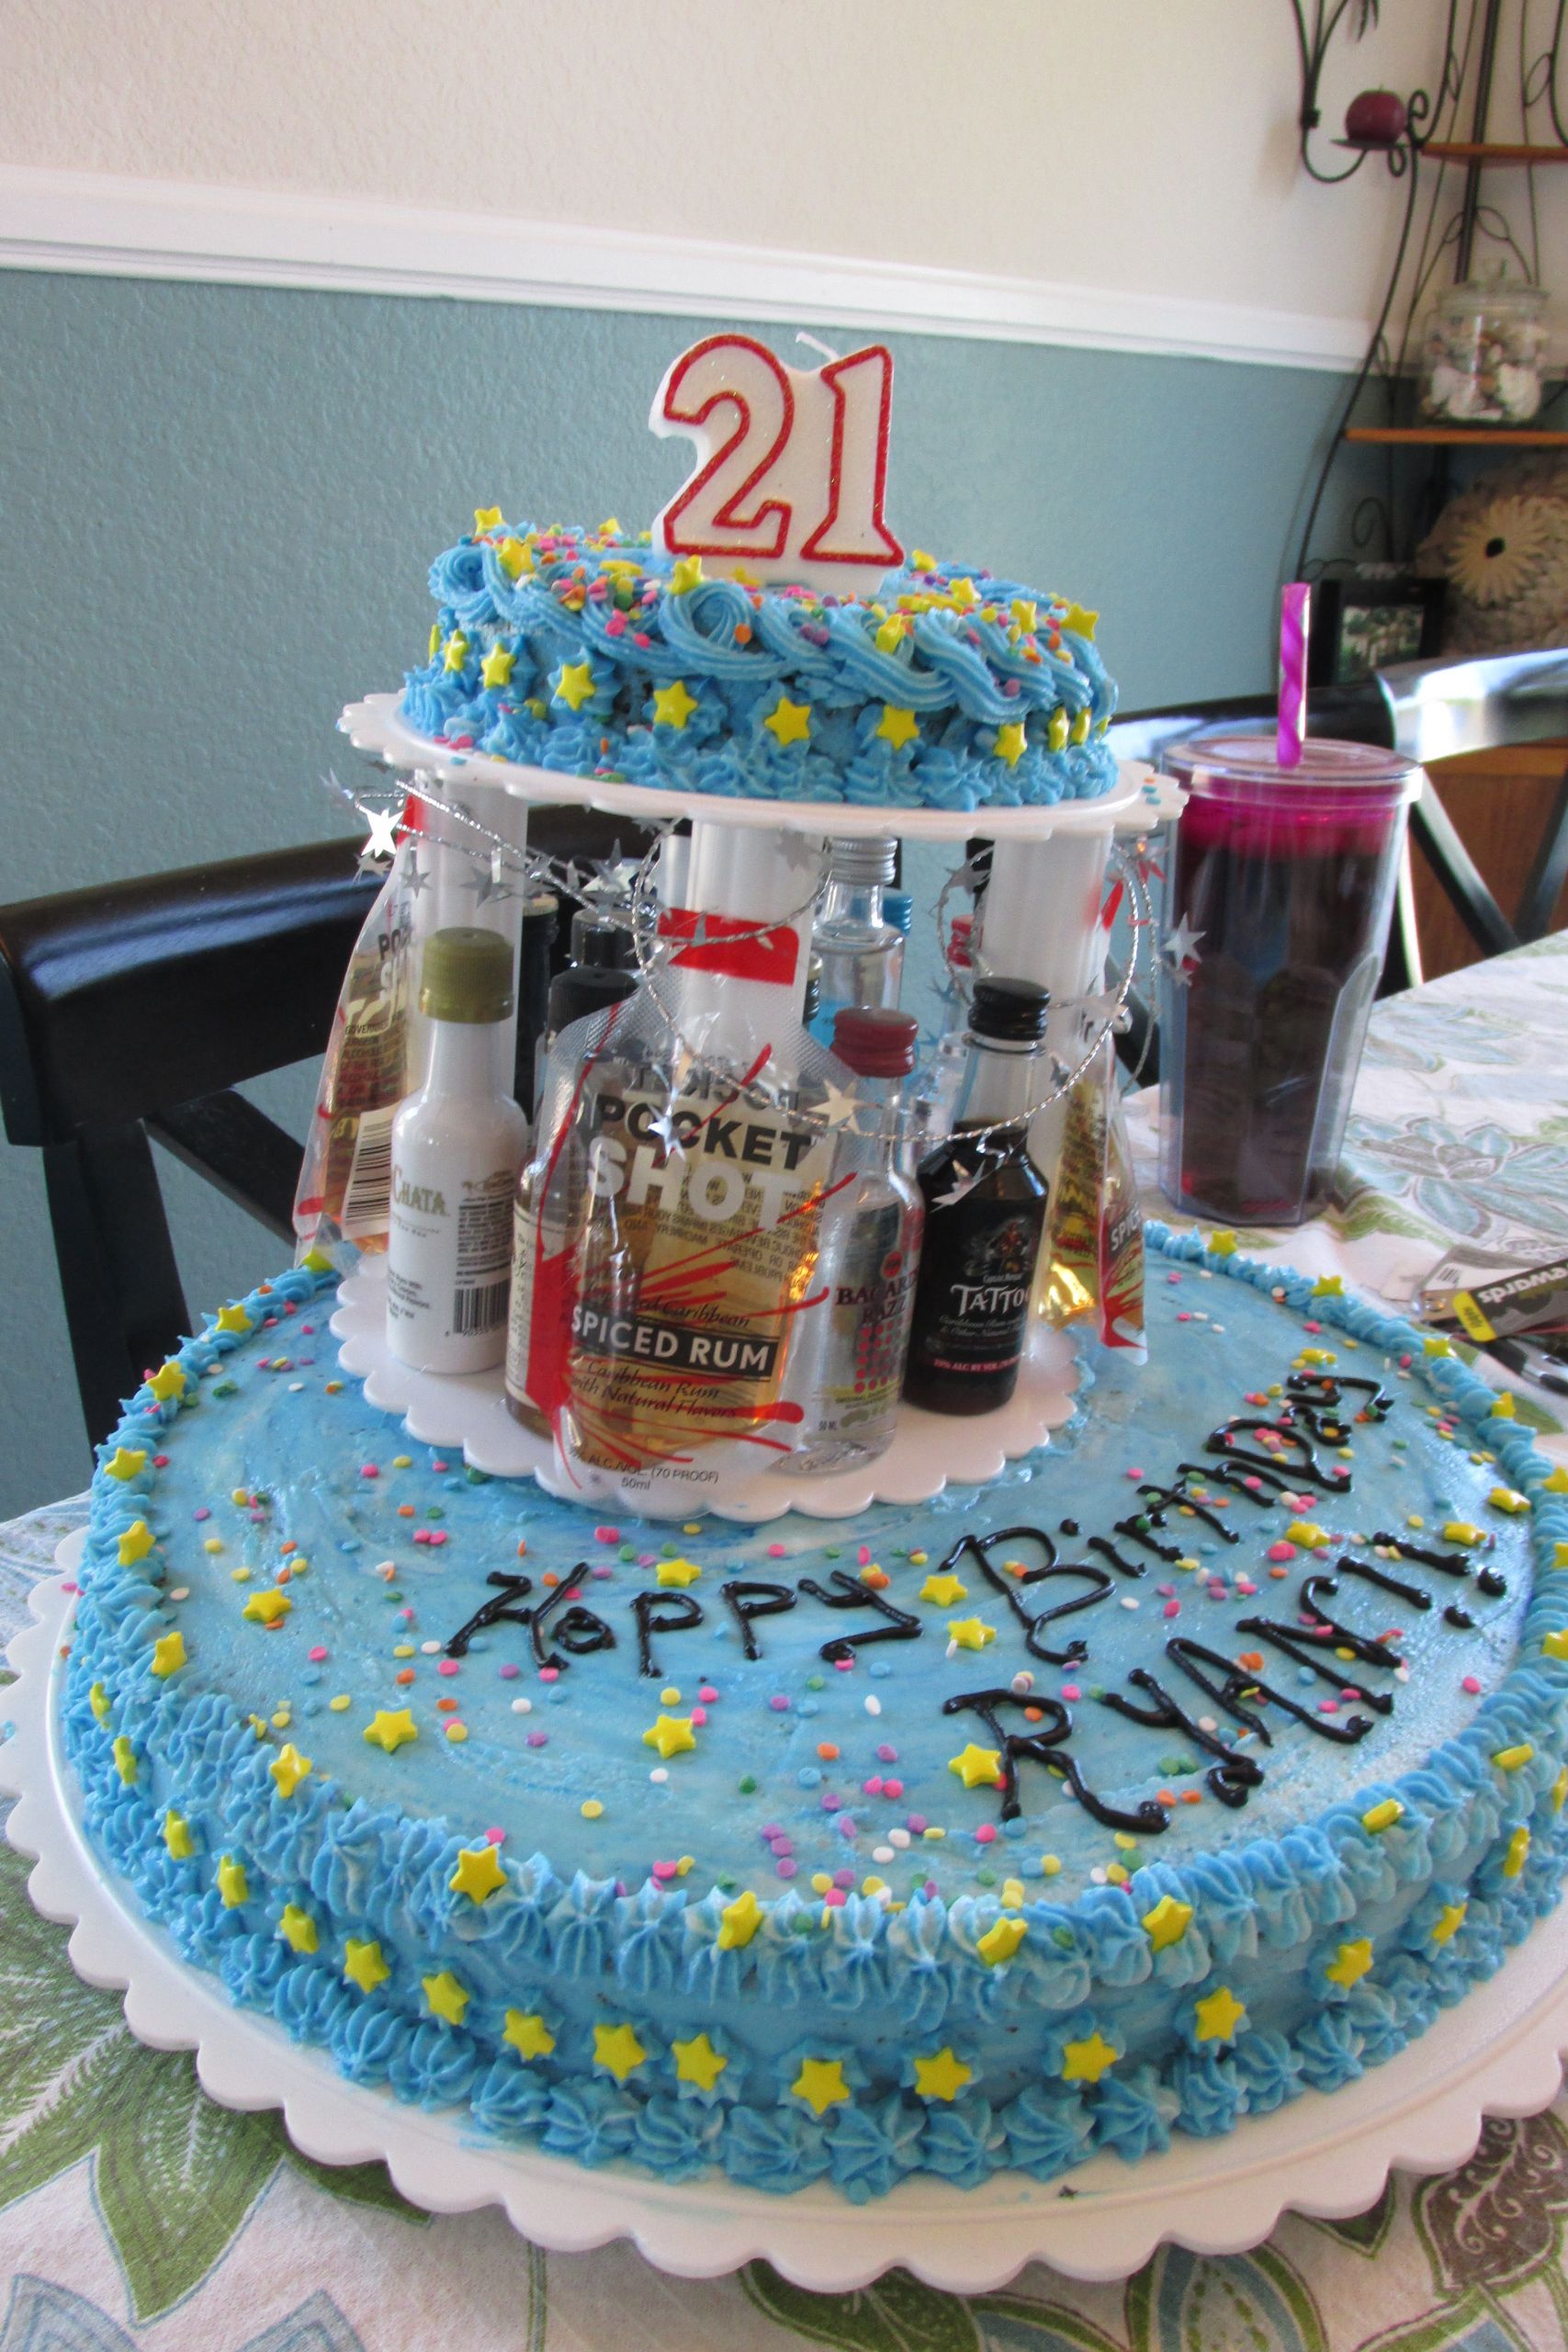 21st Birthday Cake Ideas
 Happy 21st Birthday Cake